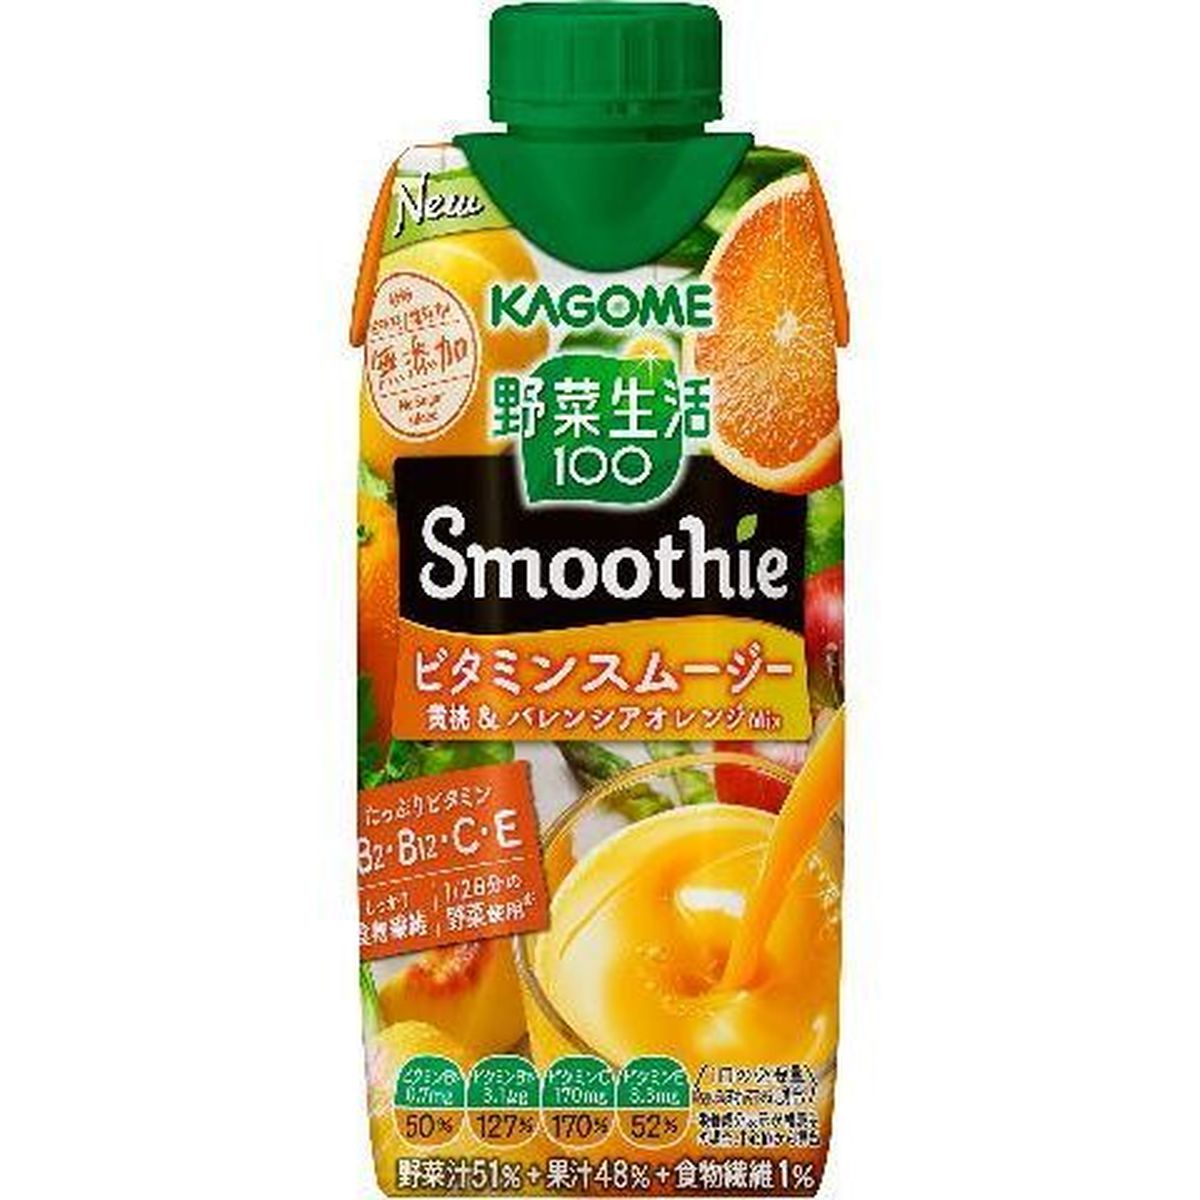 【12個入リ】カゴメ 野菜100Vスムージ黄桃オレンジ 330ml